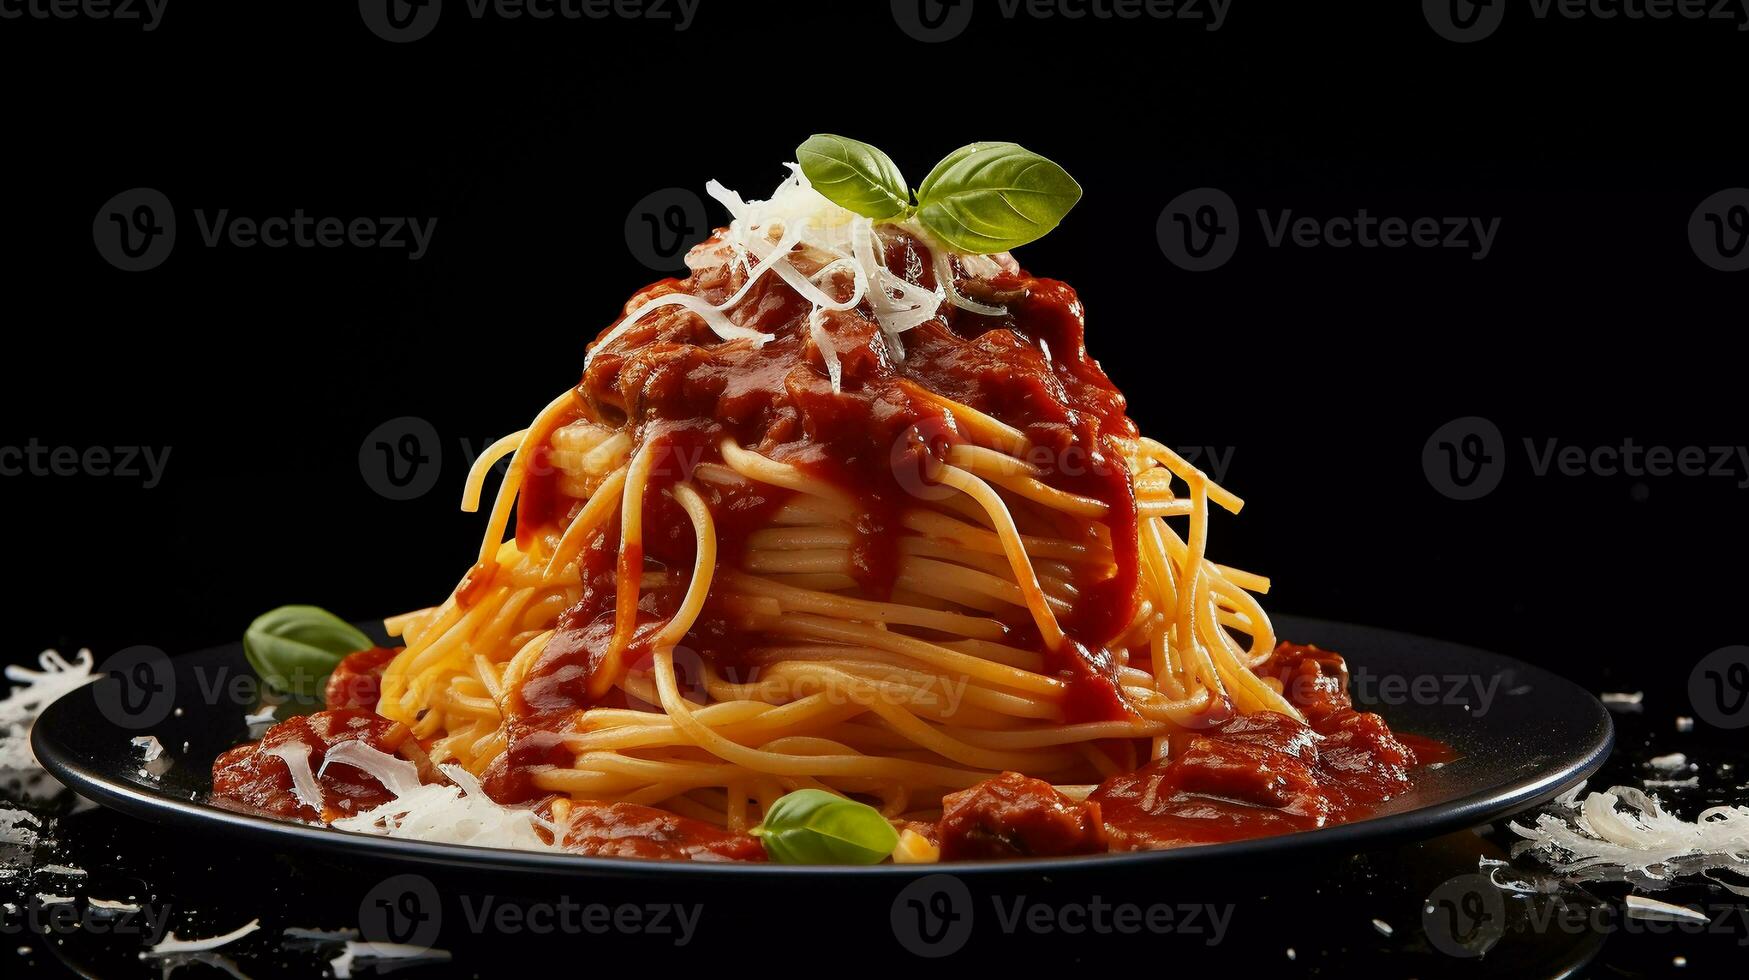 smakelijk spaghetti Italiaans voedsel samengesteld met rood saus, bekroond met ketchup en kaas foto